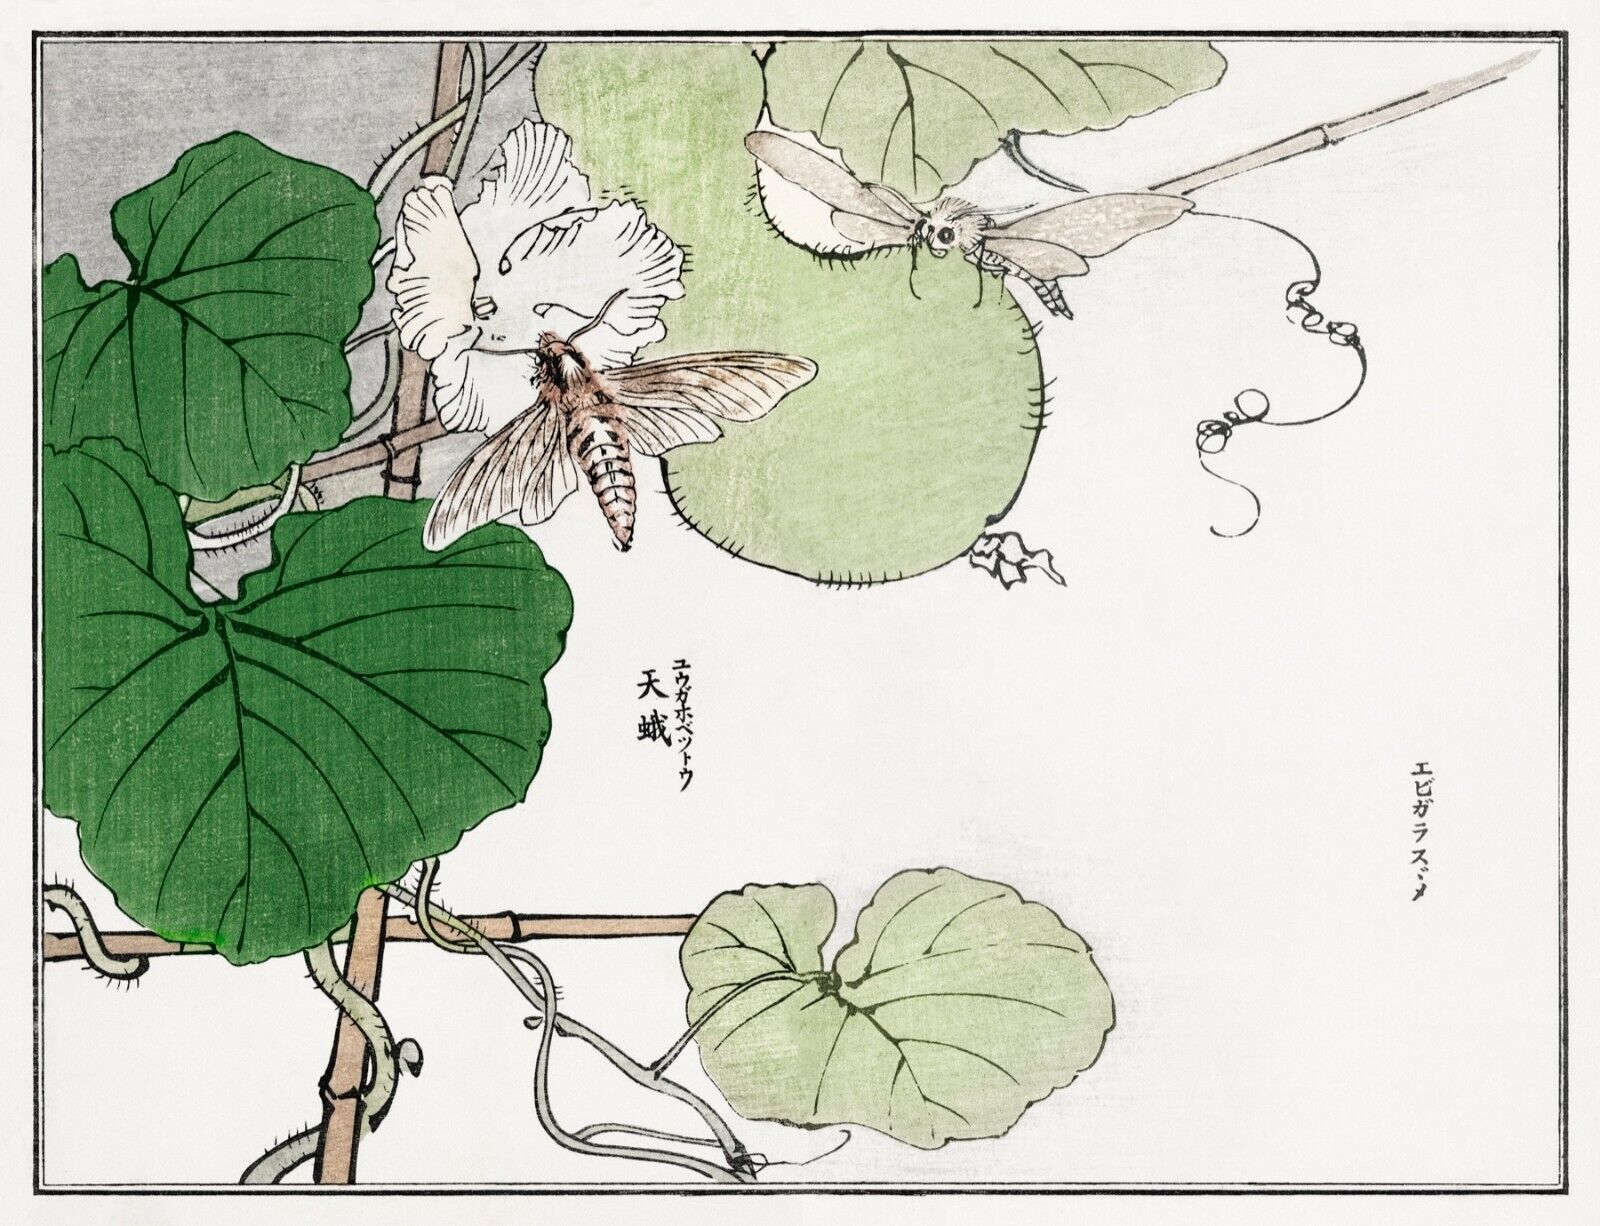 10059.Decor Poster.Room home wall.1910 Japan print.Morimoto Toko art.Moths